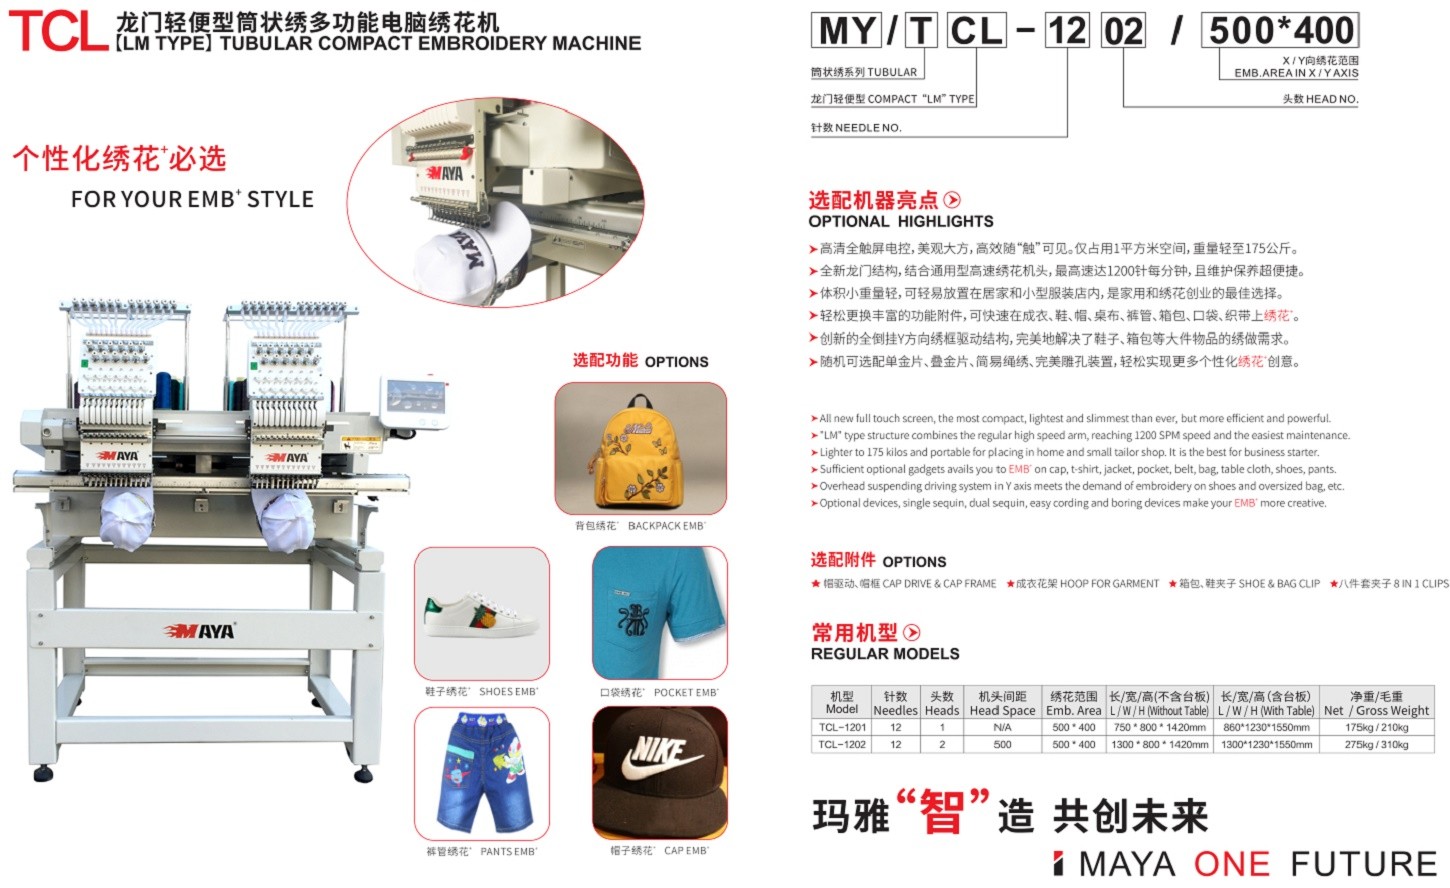 TCL-1202详情-中文产品说明PDF65截图1450x880.jpg